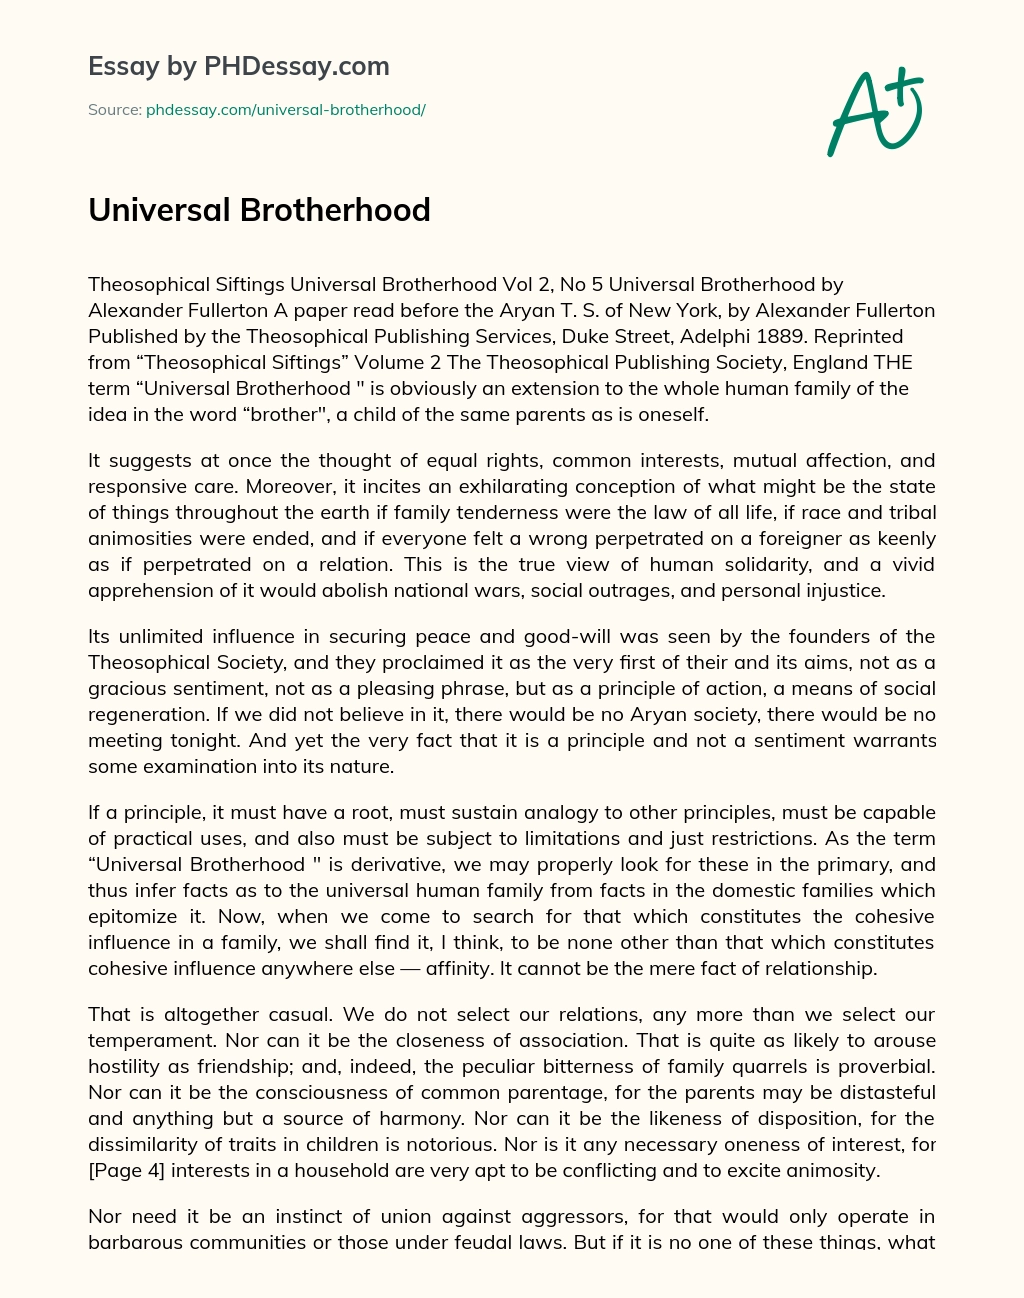 essay on universal brotherhood